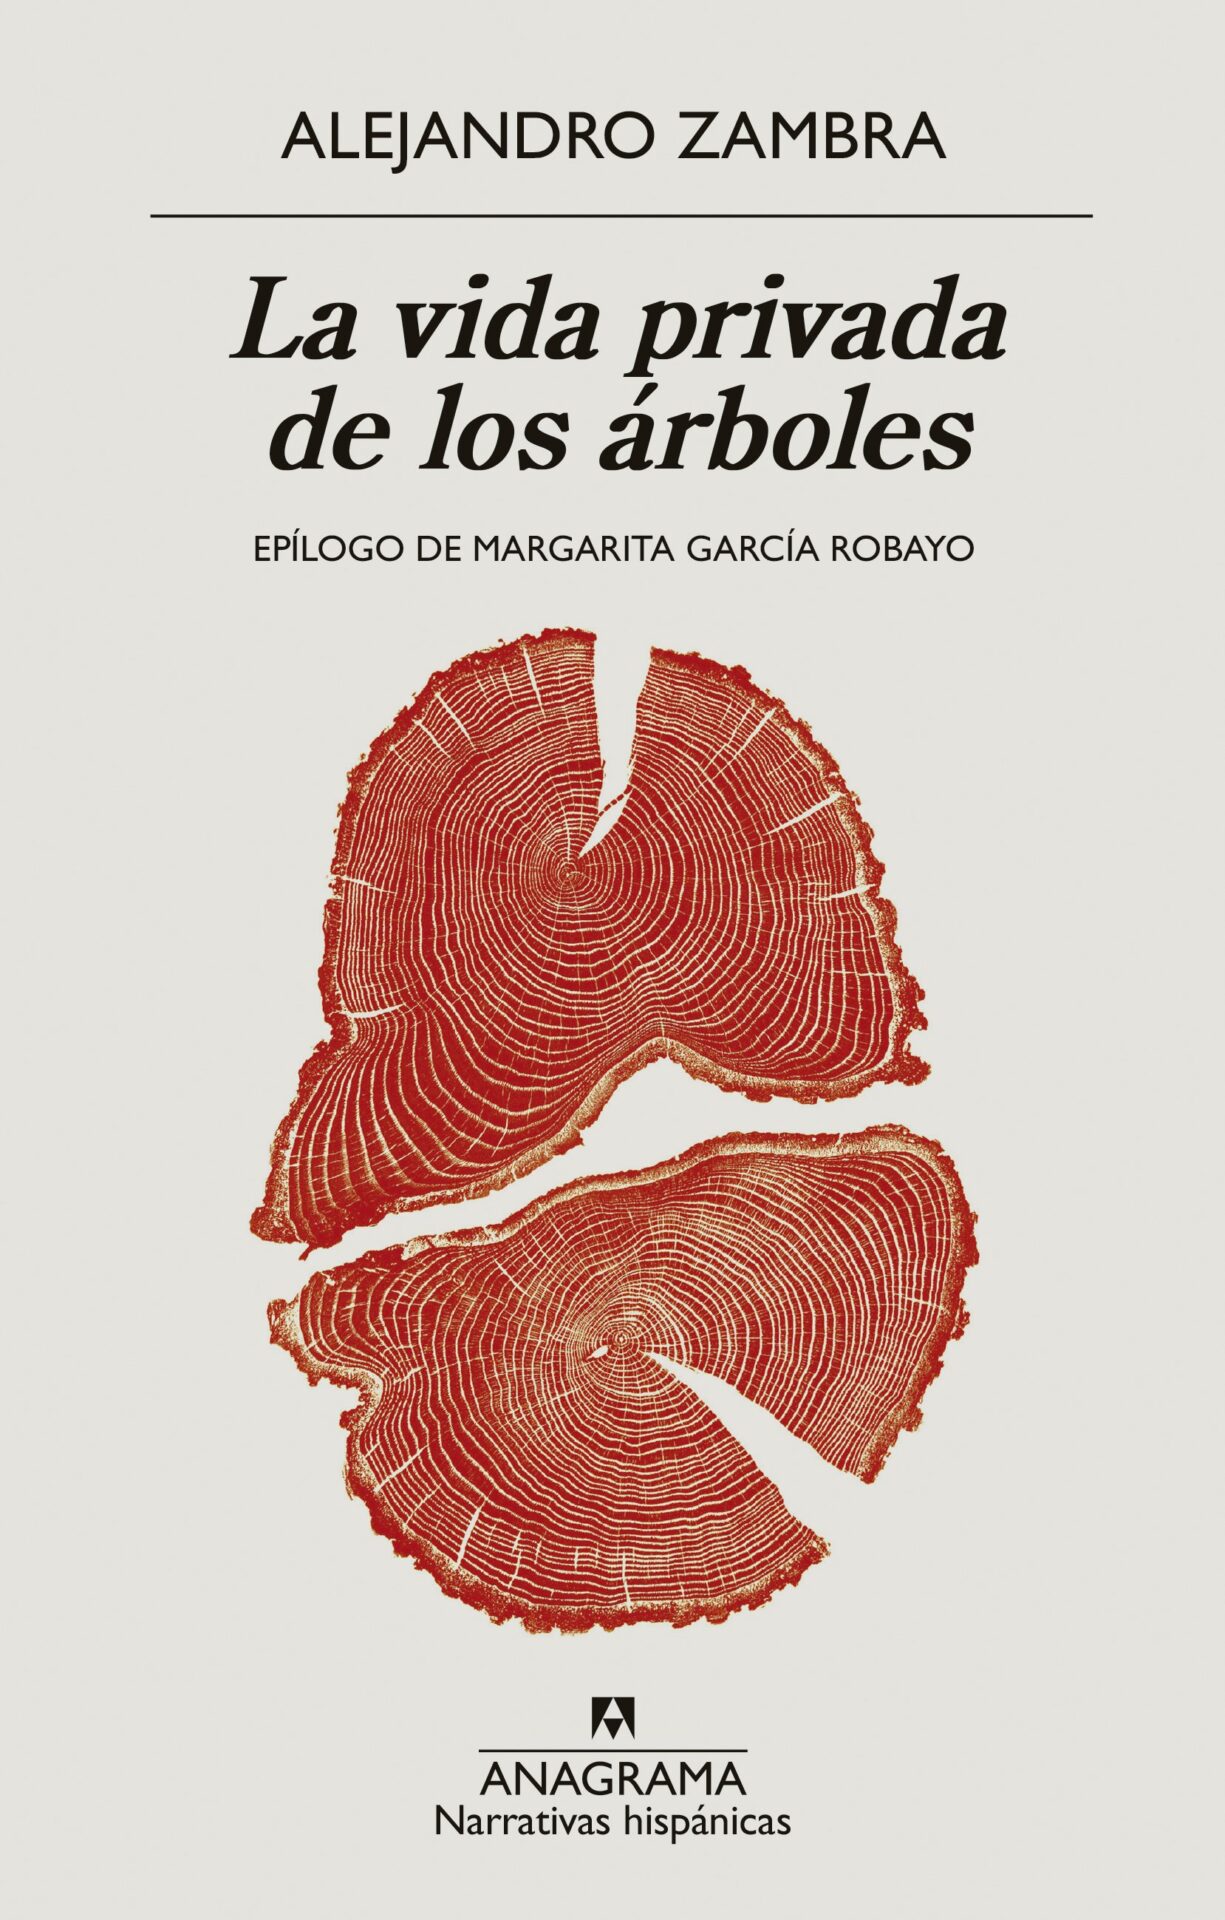 Epilogue: No Words by Margarita García Robayo